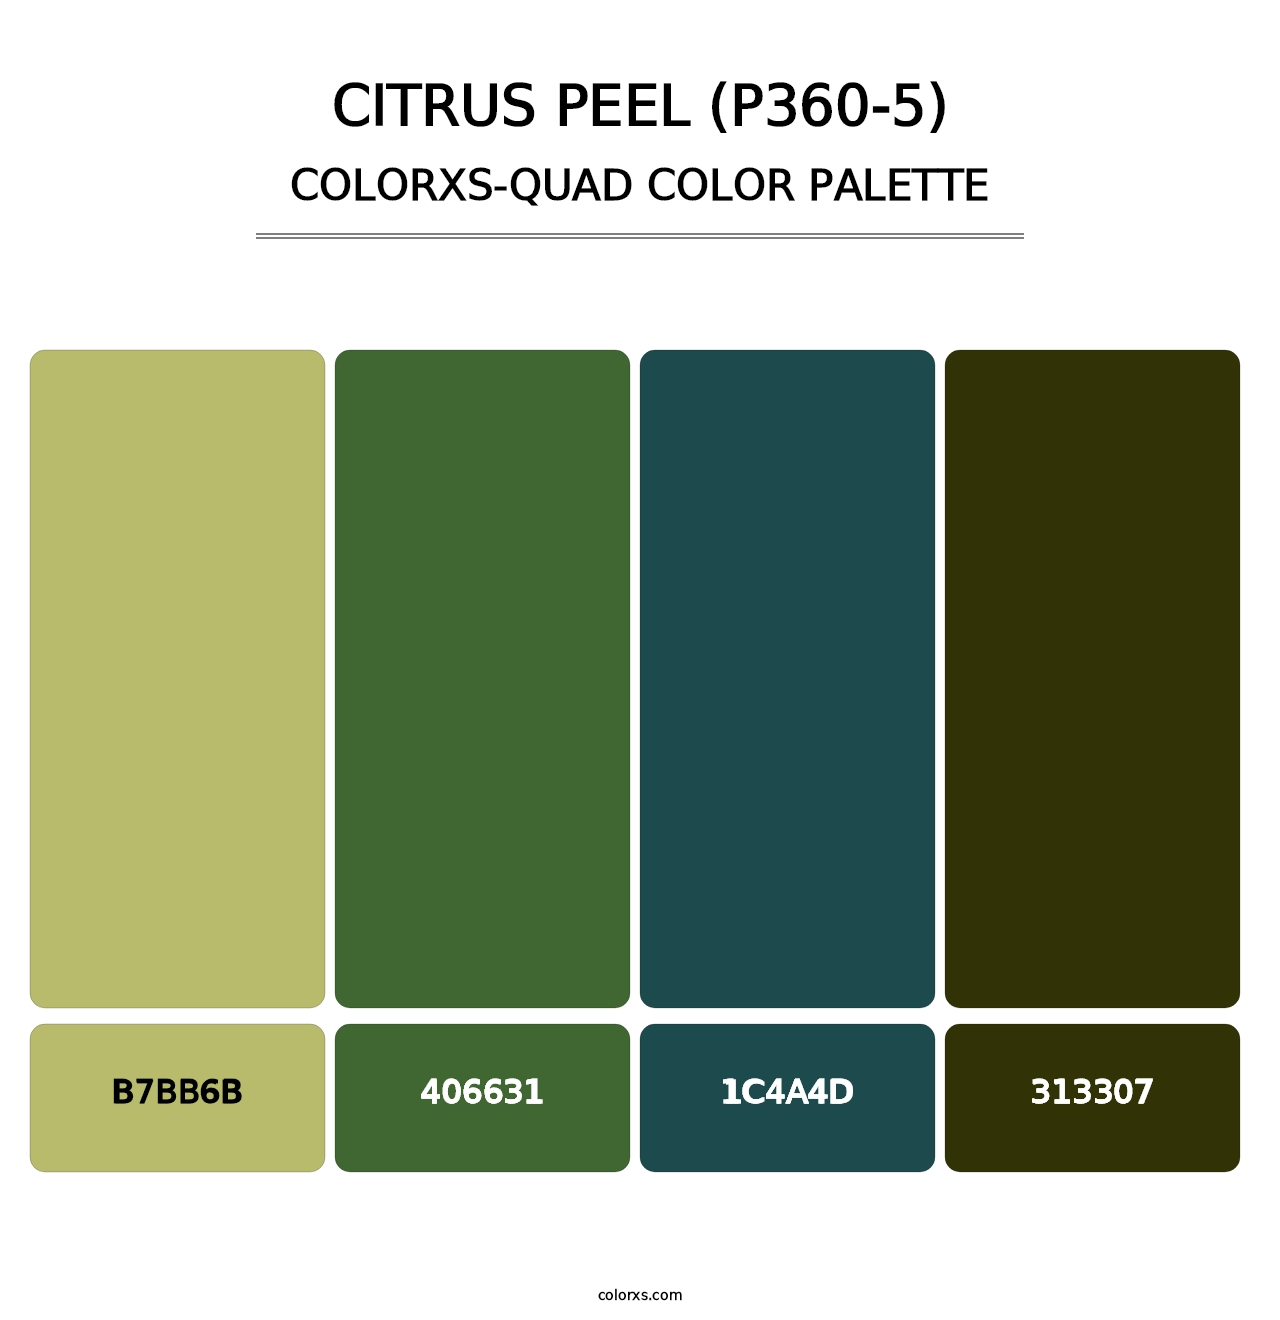 Citrus Peel (P360-5) - Colorxs Quad Palette